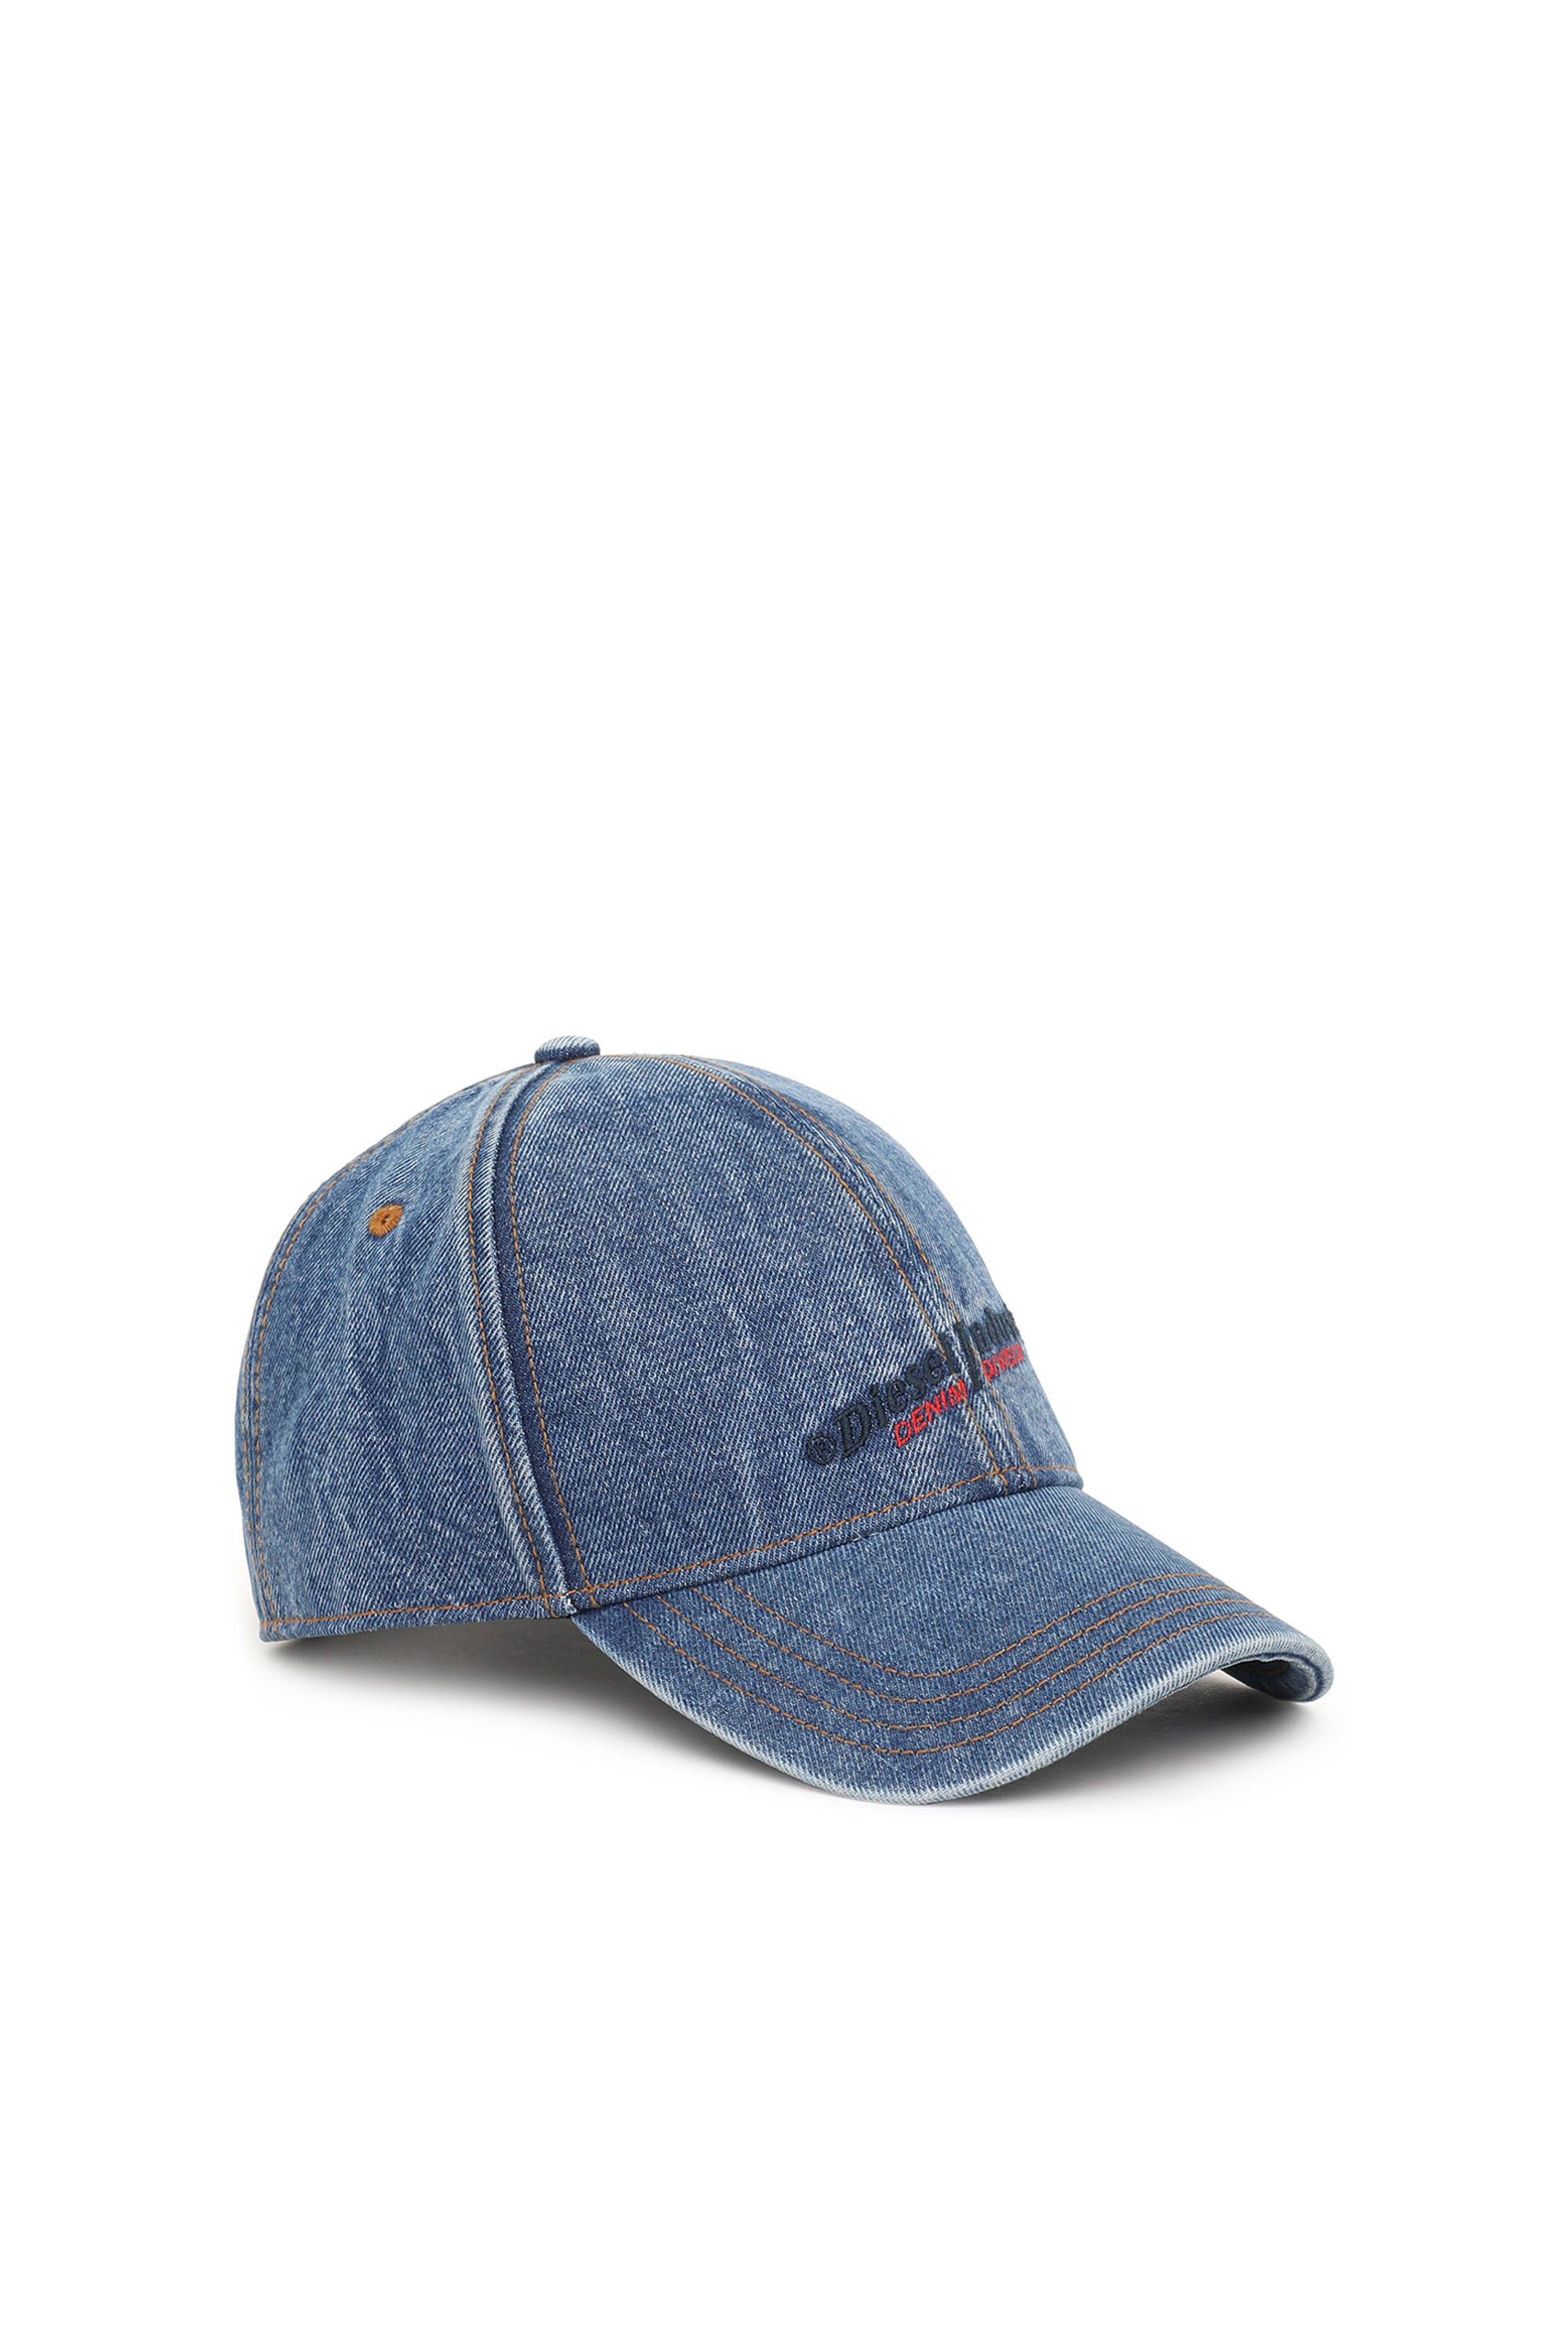 Diesel - Berretto da baseball in denim - Cappelli - Unisex - Blu